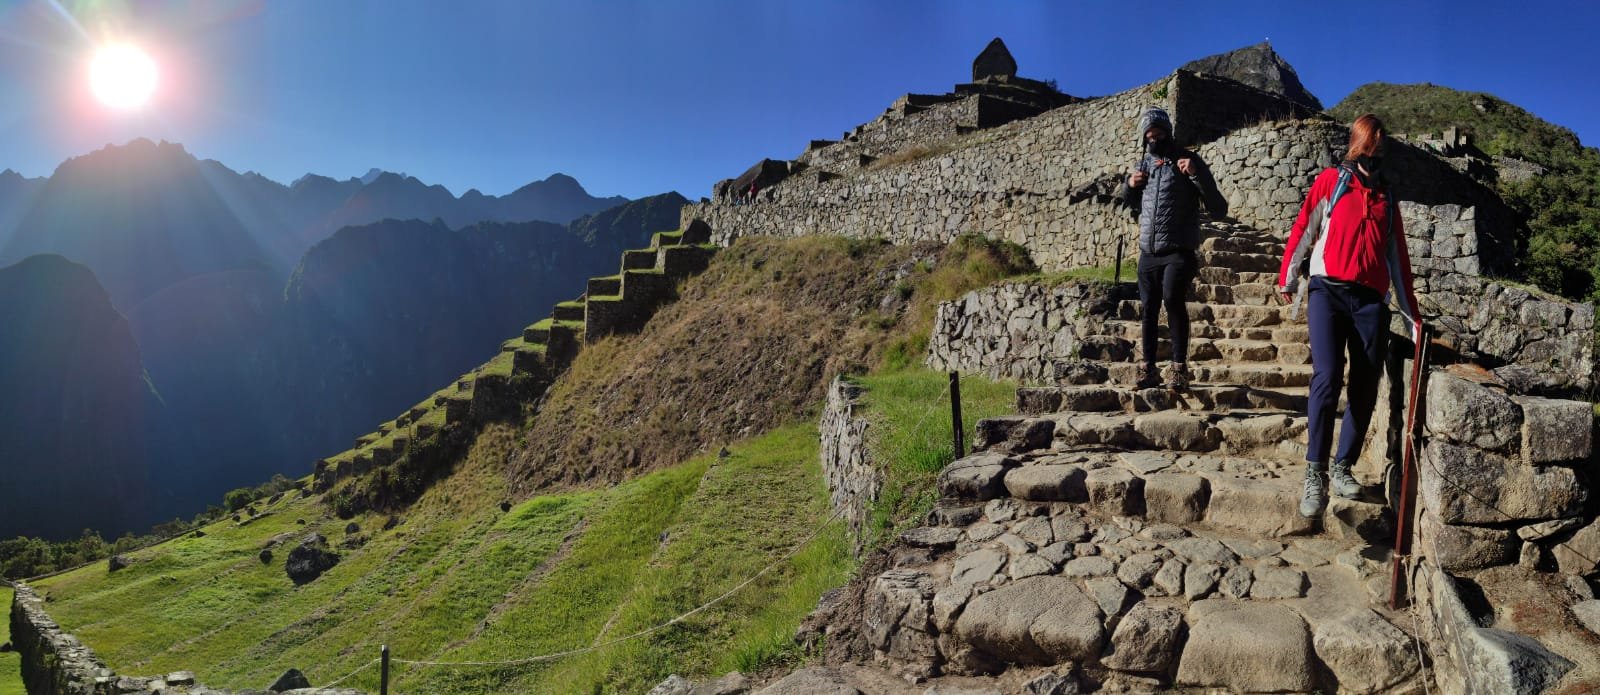 Trilha Inca Clássica + Machu Picchu 4D/3NPhoto #4 